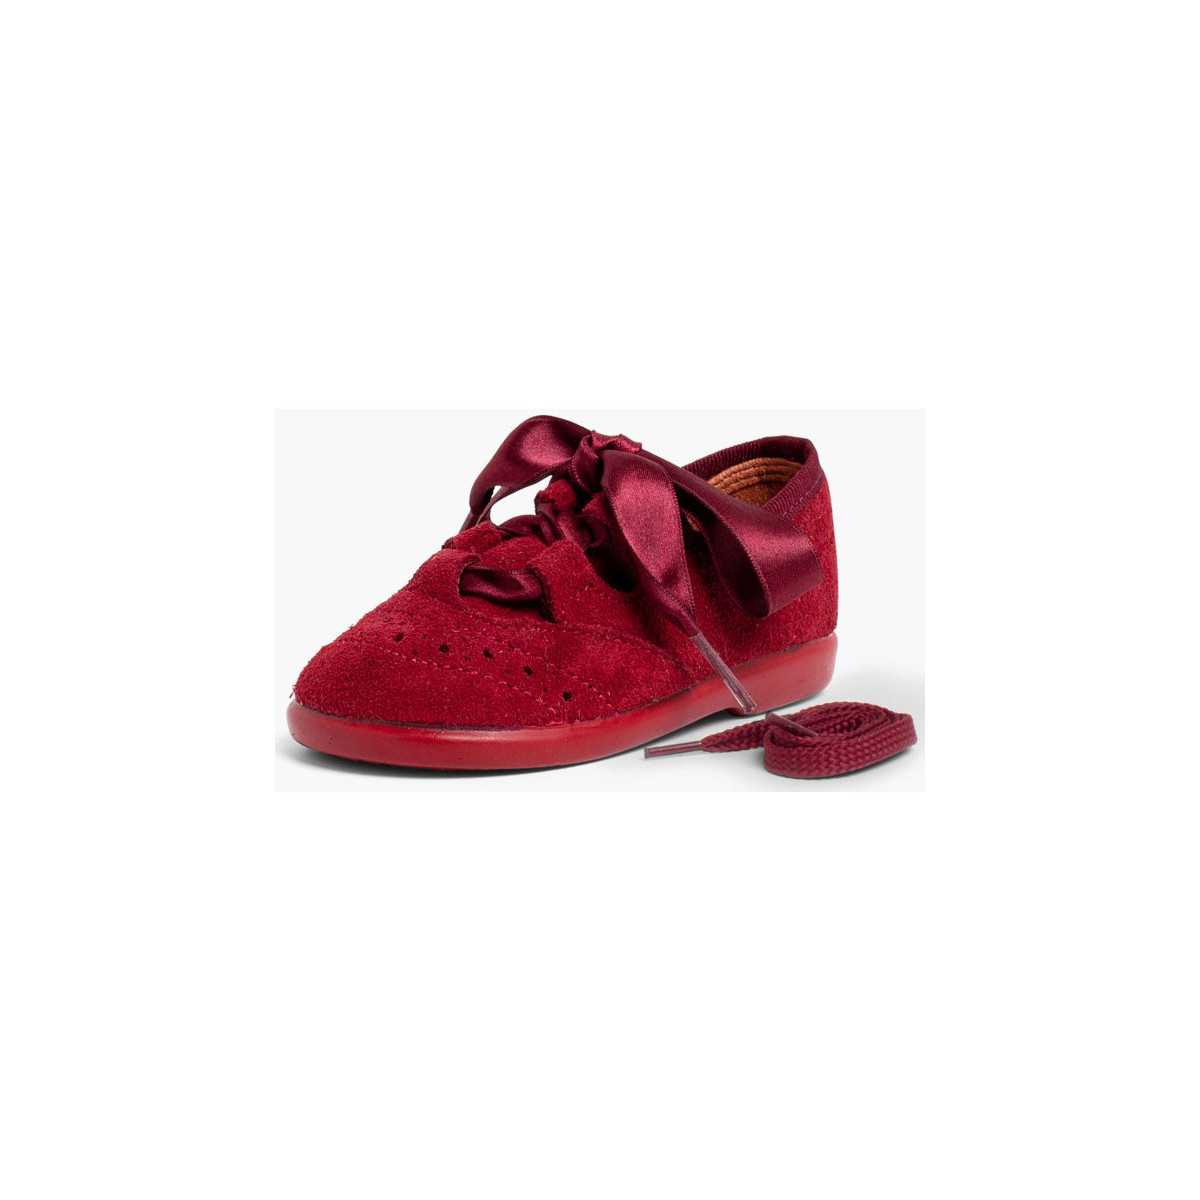 Pisamonas Bordeaux Chaussures anglaises enfants en suède xfS7sM0i